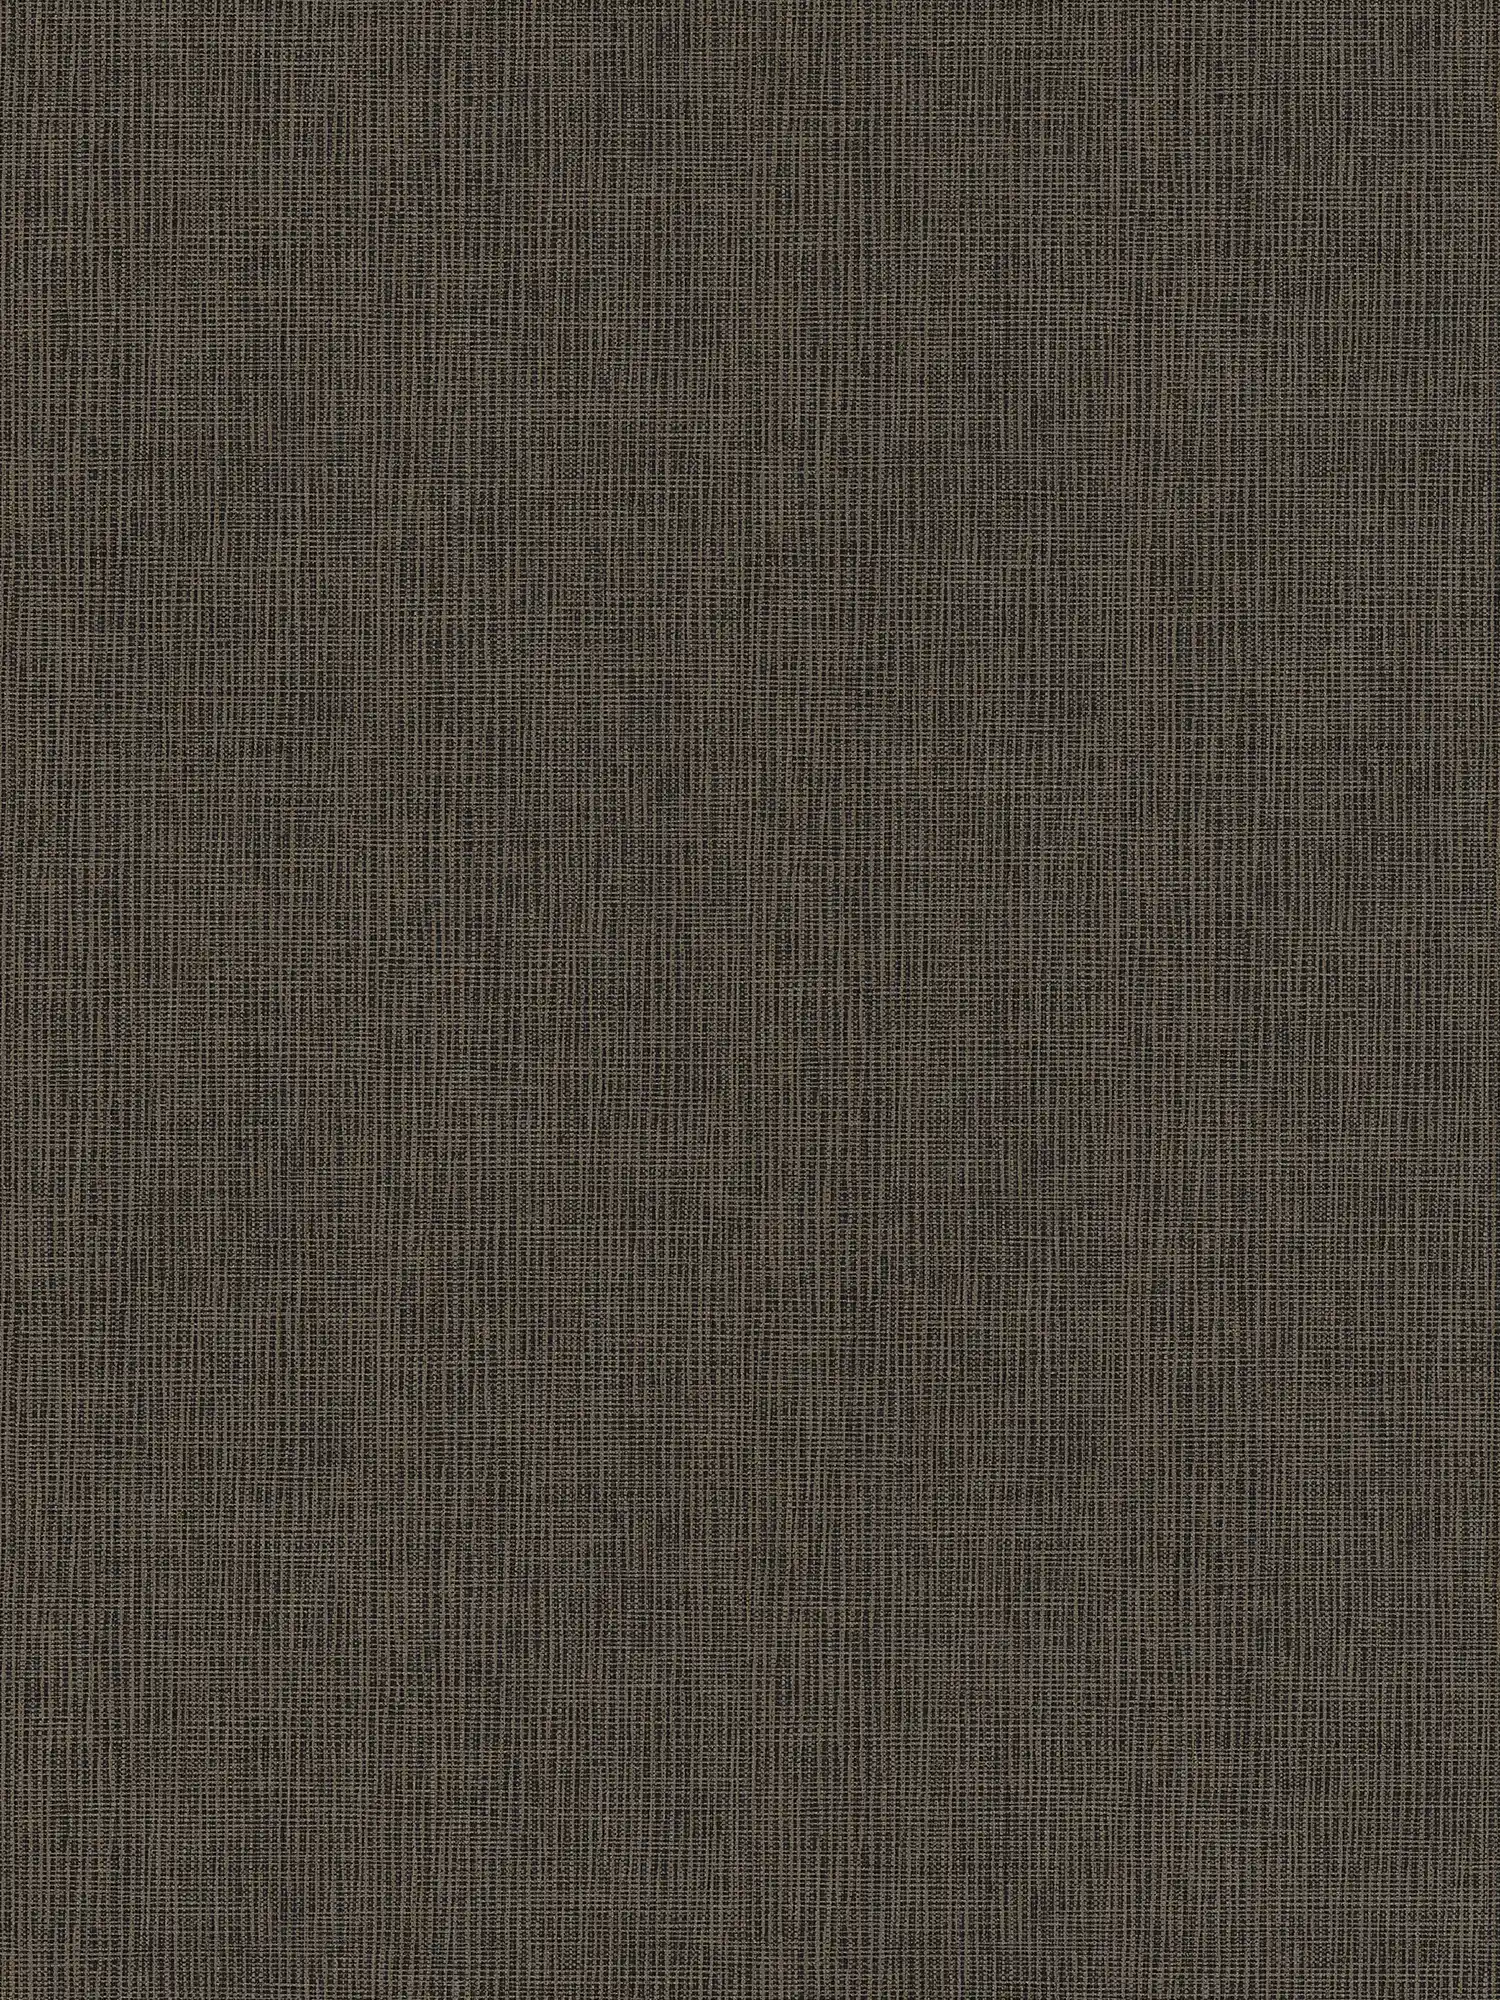 Papier peint intissé marron avec détails gris & or - bleu, gris, argent
